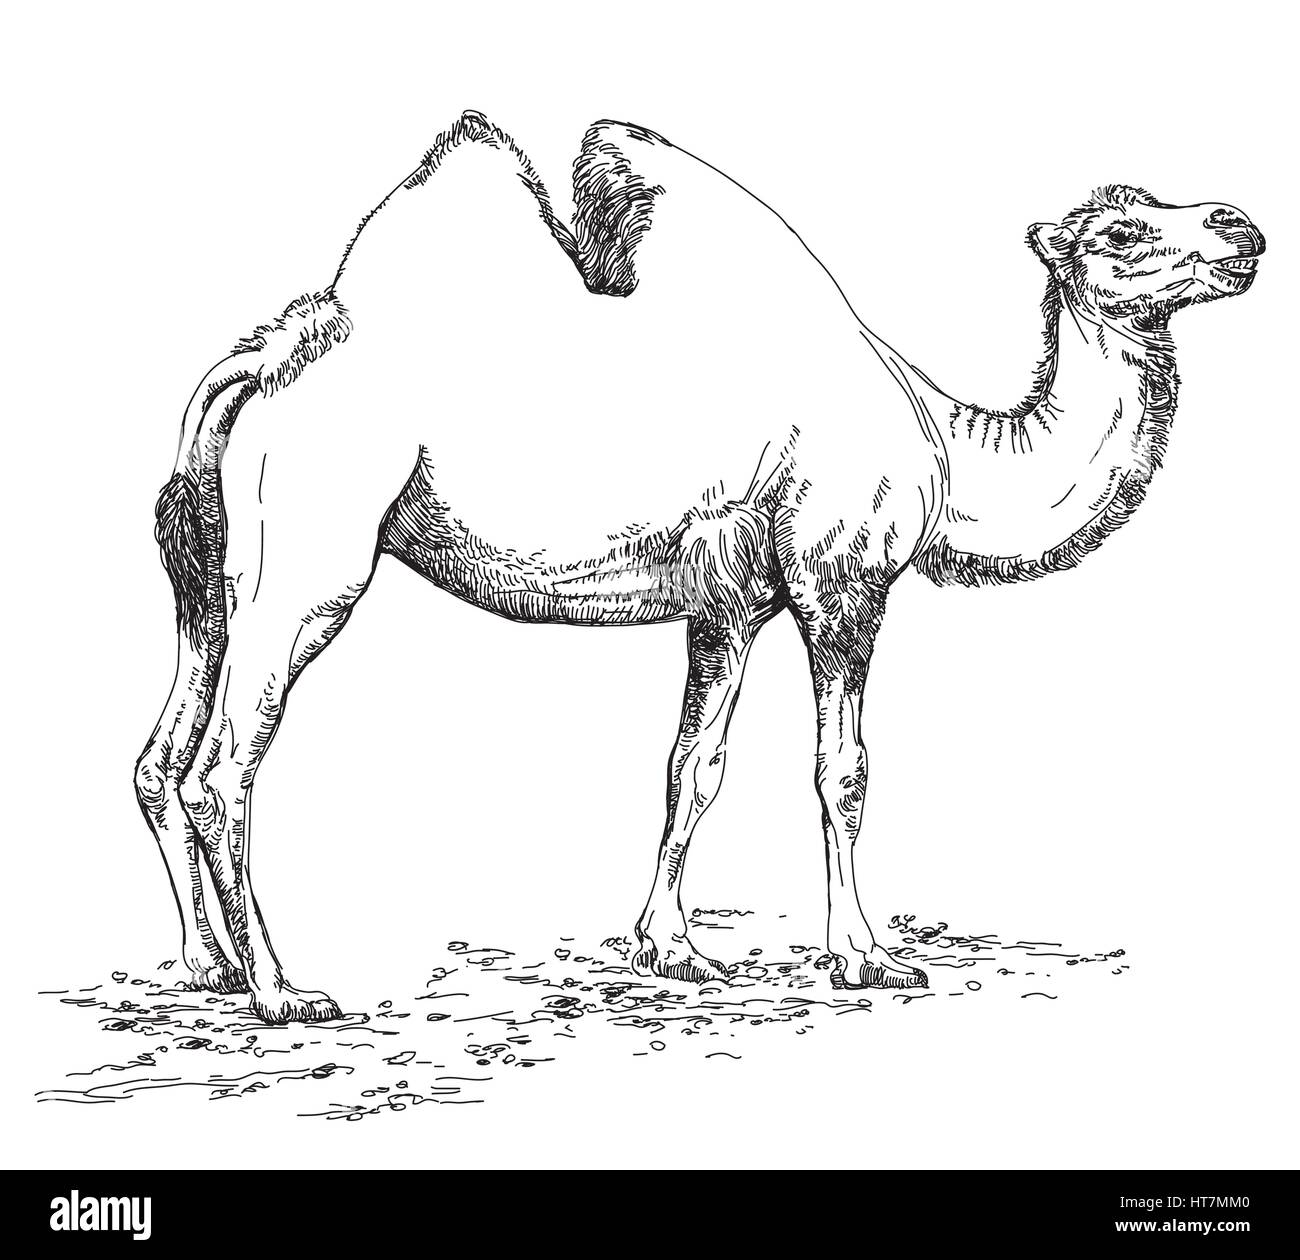 Dessin au crayon d'illustration vectorielle de chameau en noir et blanc Illustration de Vecteur